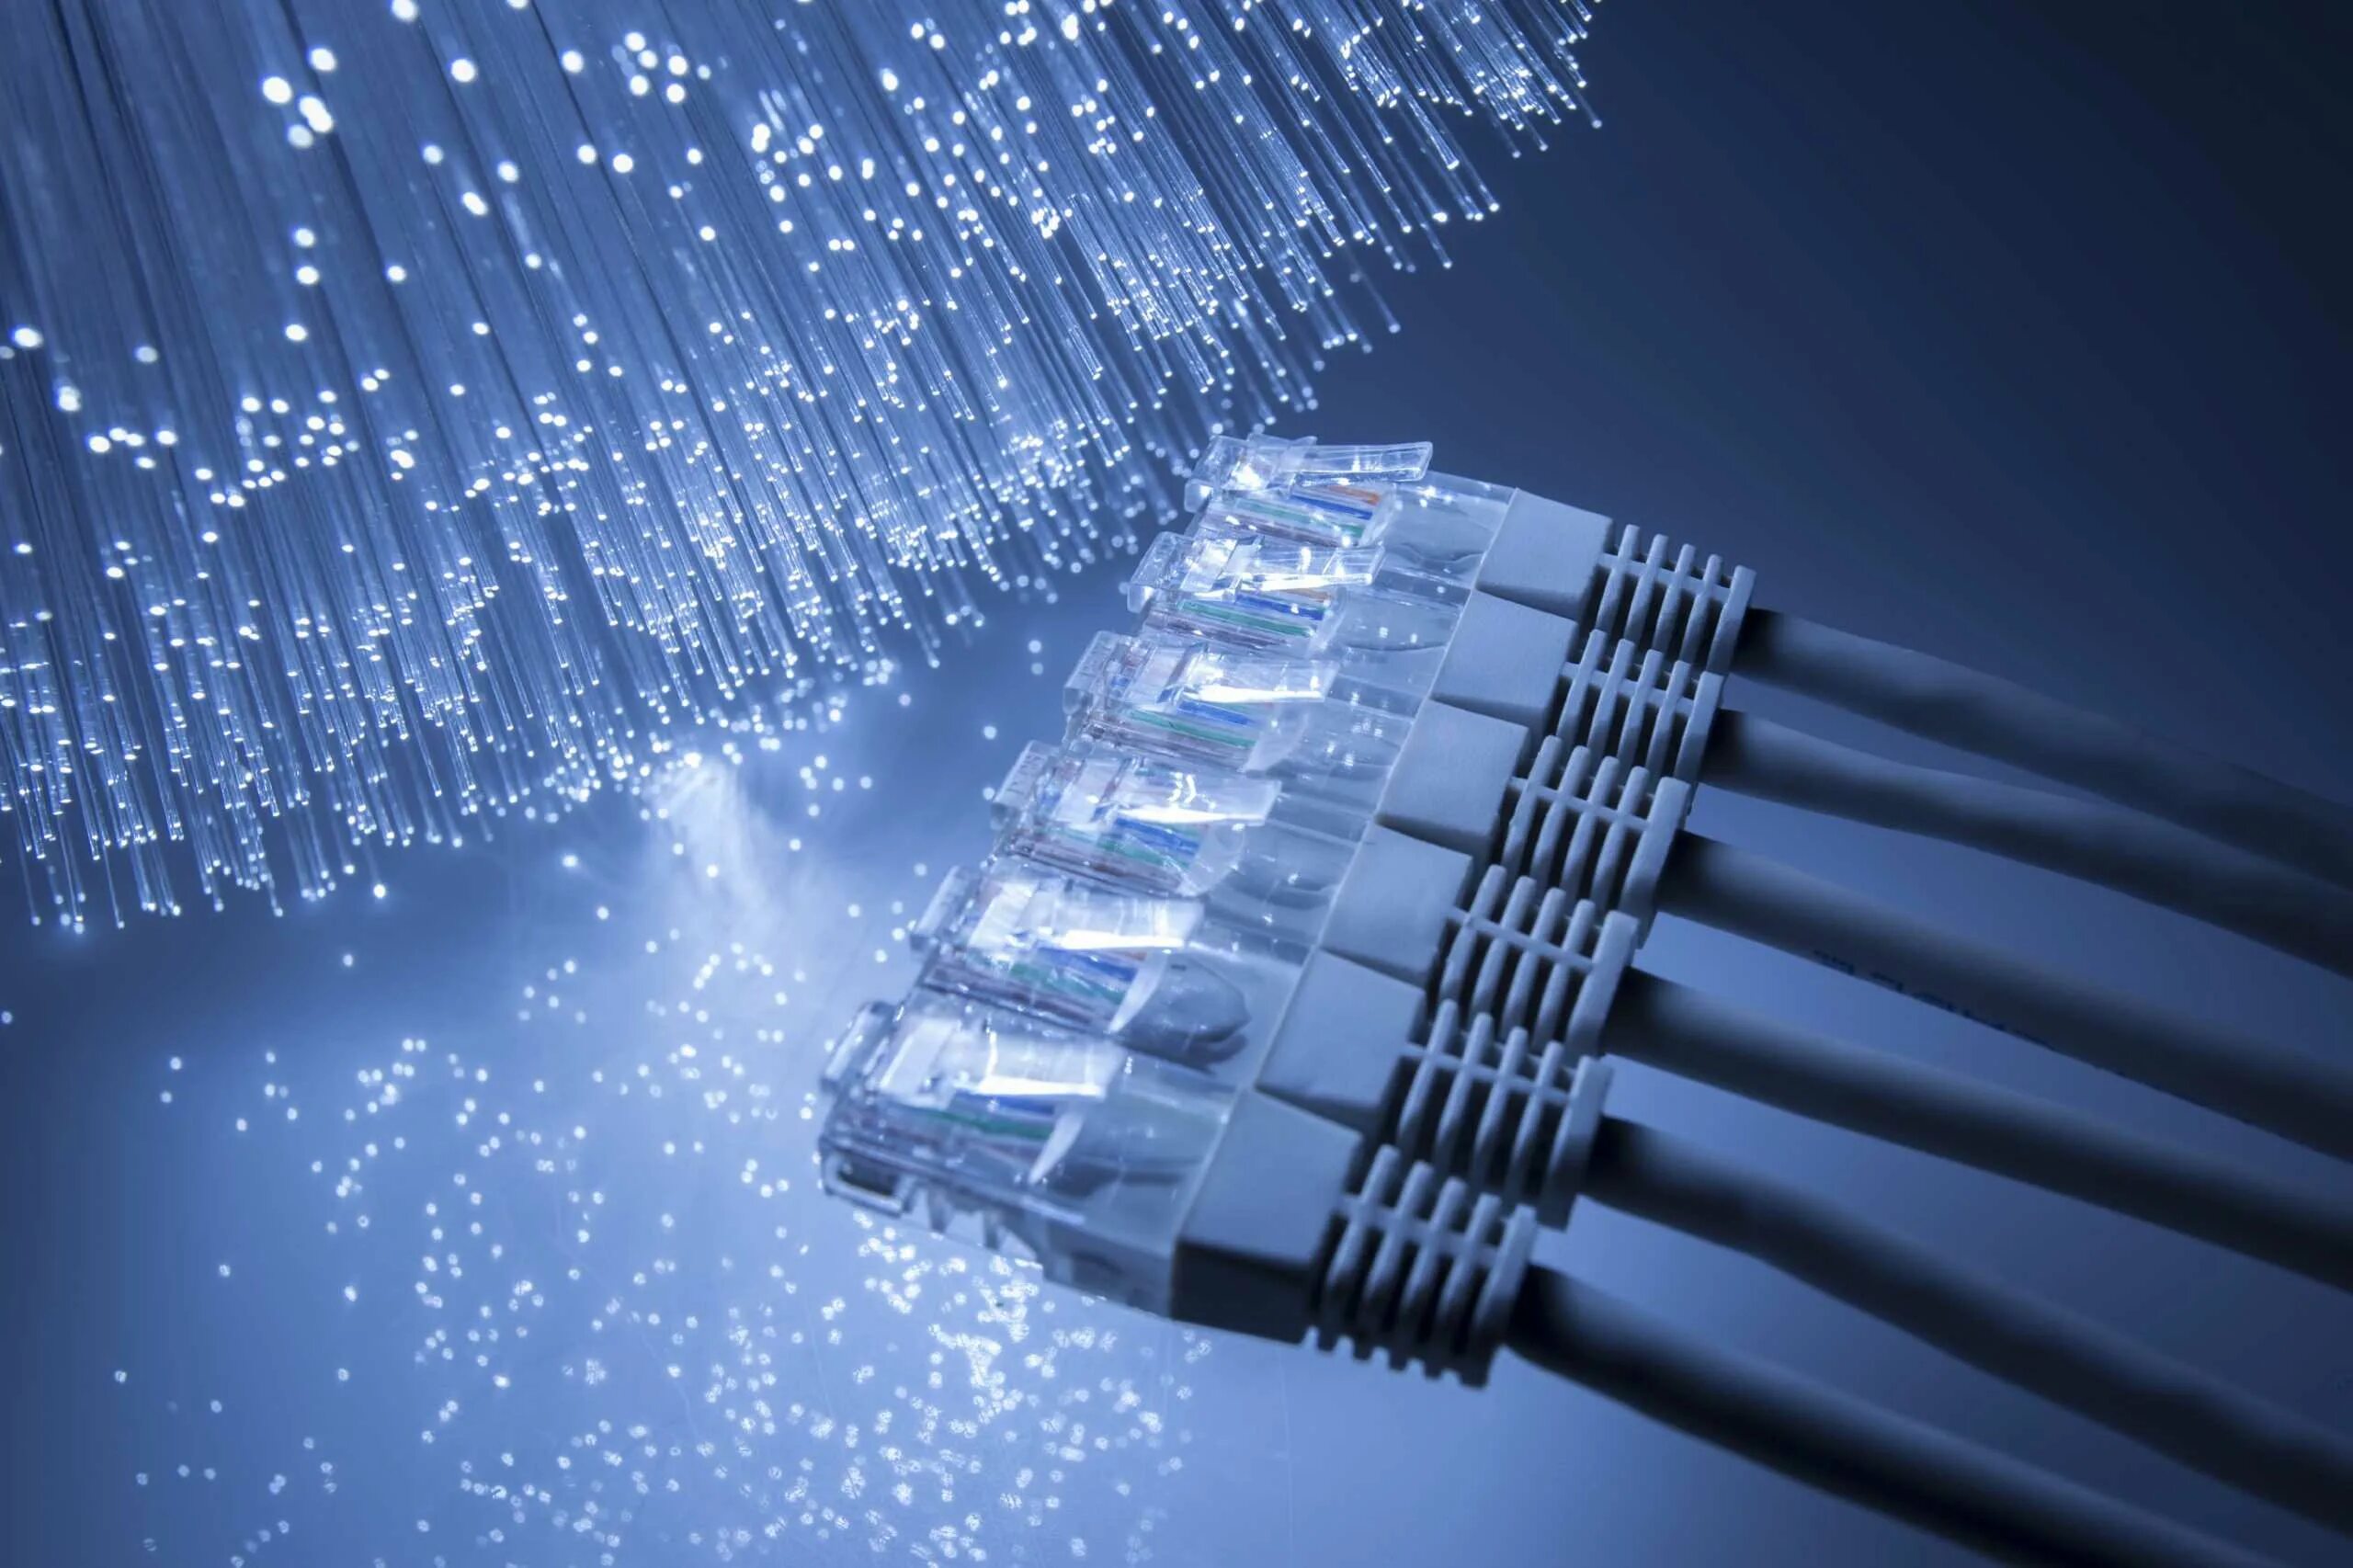 Провод Ethernet ВОЛС. Оптоволокно сетевой кабель. Волоконно-оптические линии связи. Сетевое оборудование компьютерных сетей оптоволокно. Линии передачи сети связи